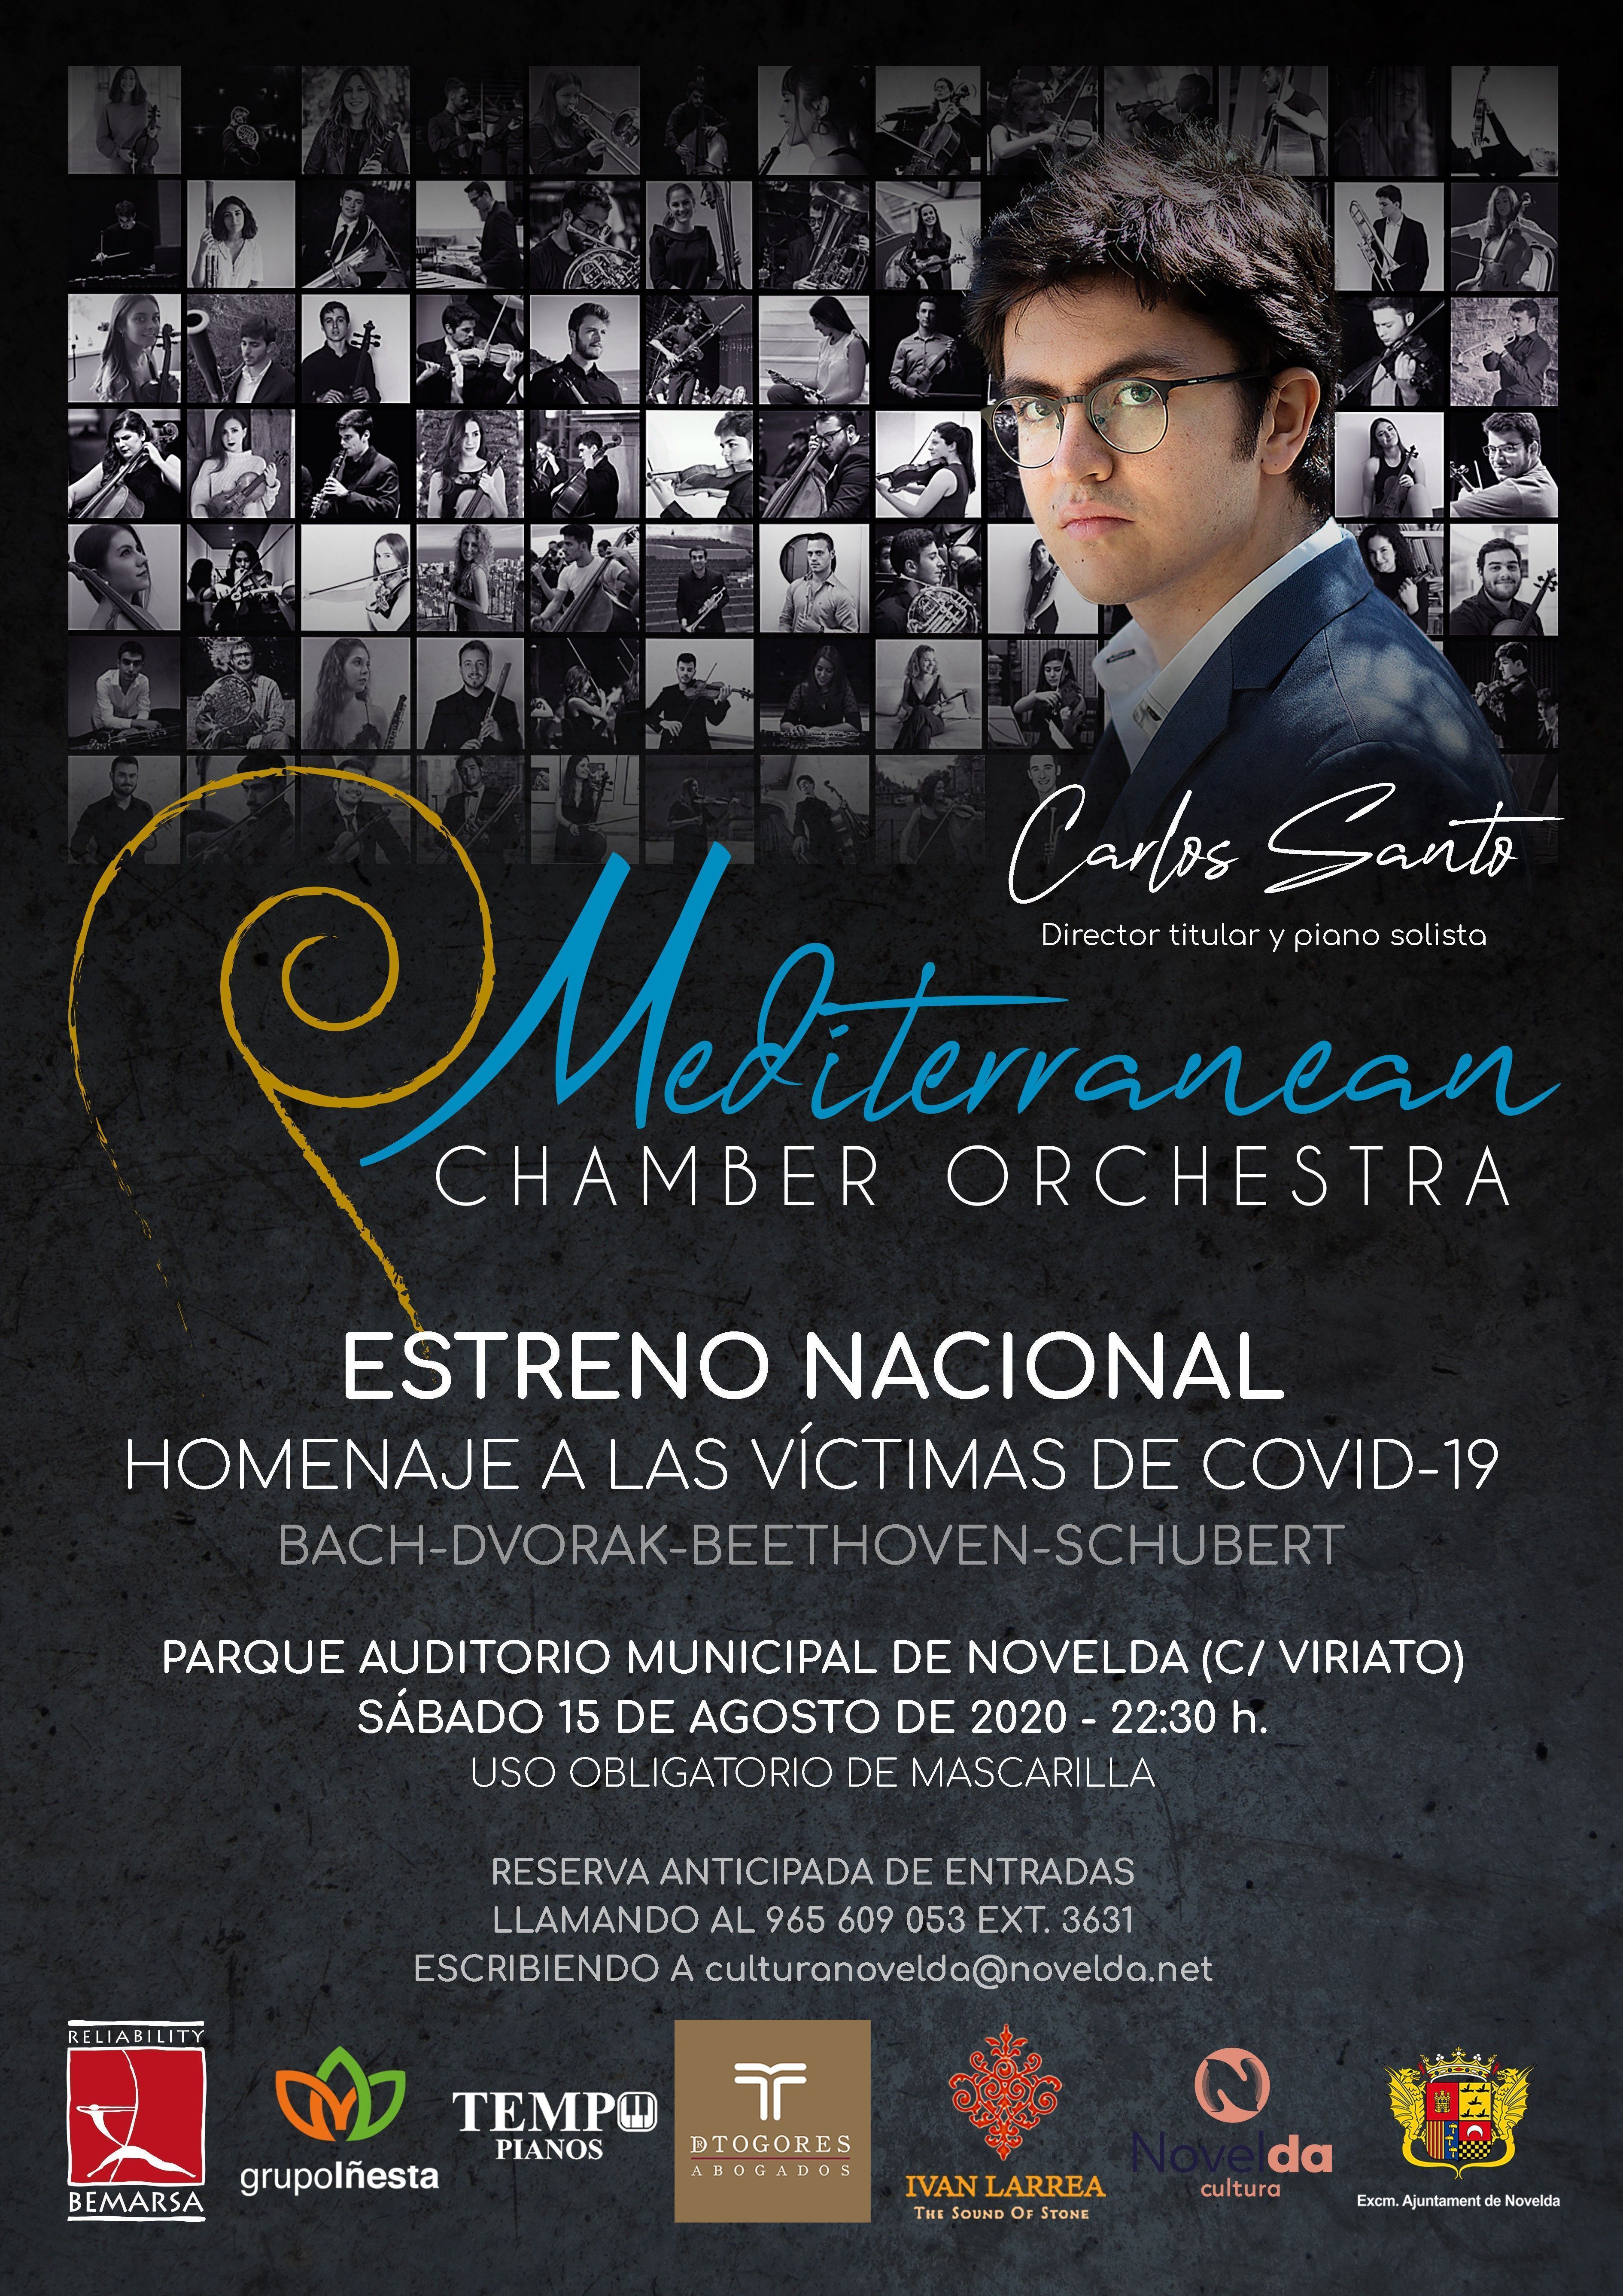 Ayuntamiento de Novelda IMG_4594 "Nits d'Estiu"  Concierto de Carlos santo & Mediterranean Chamber Orchestra 